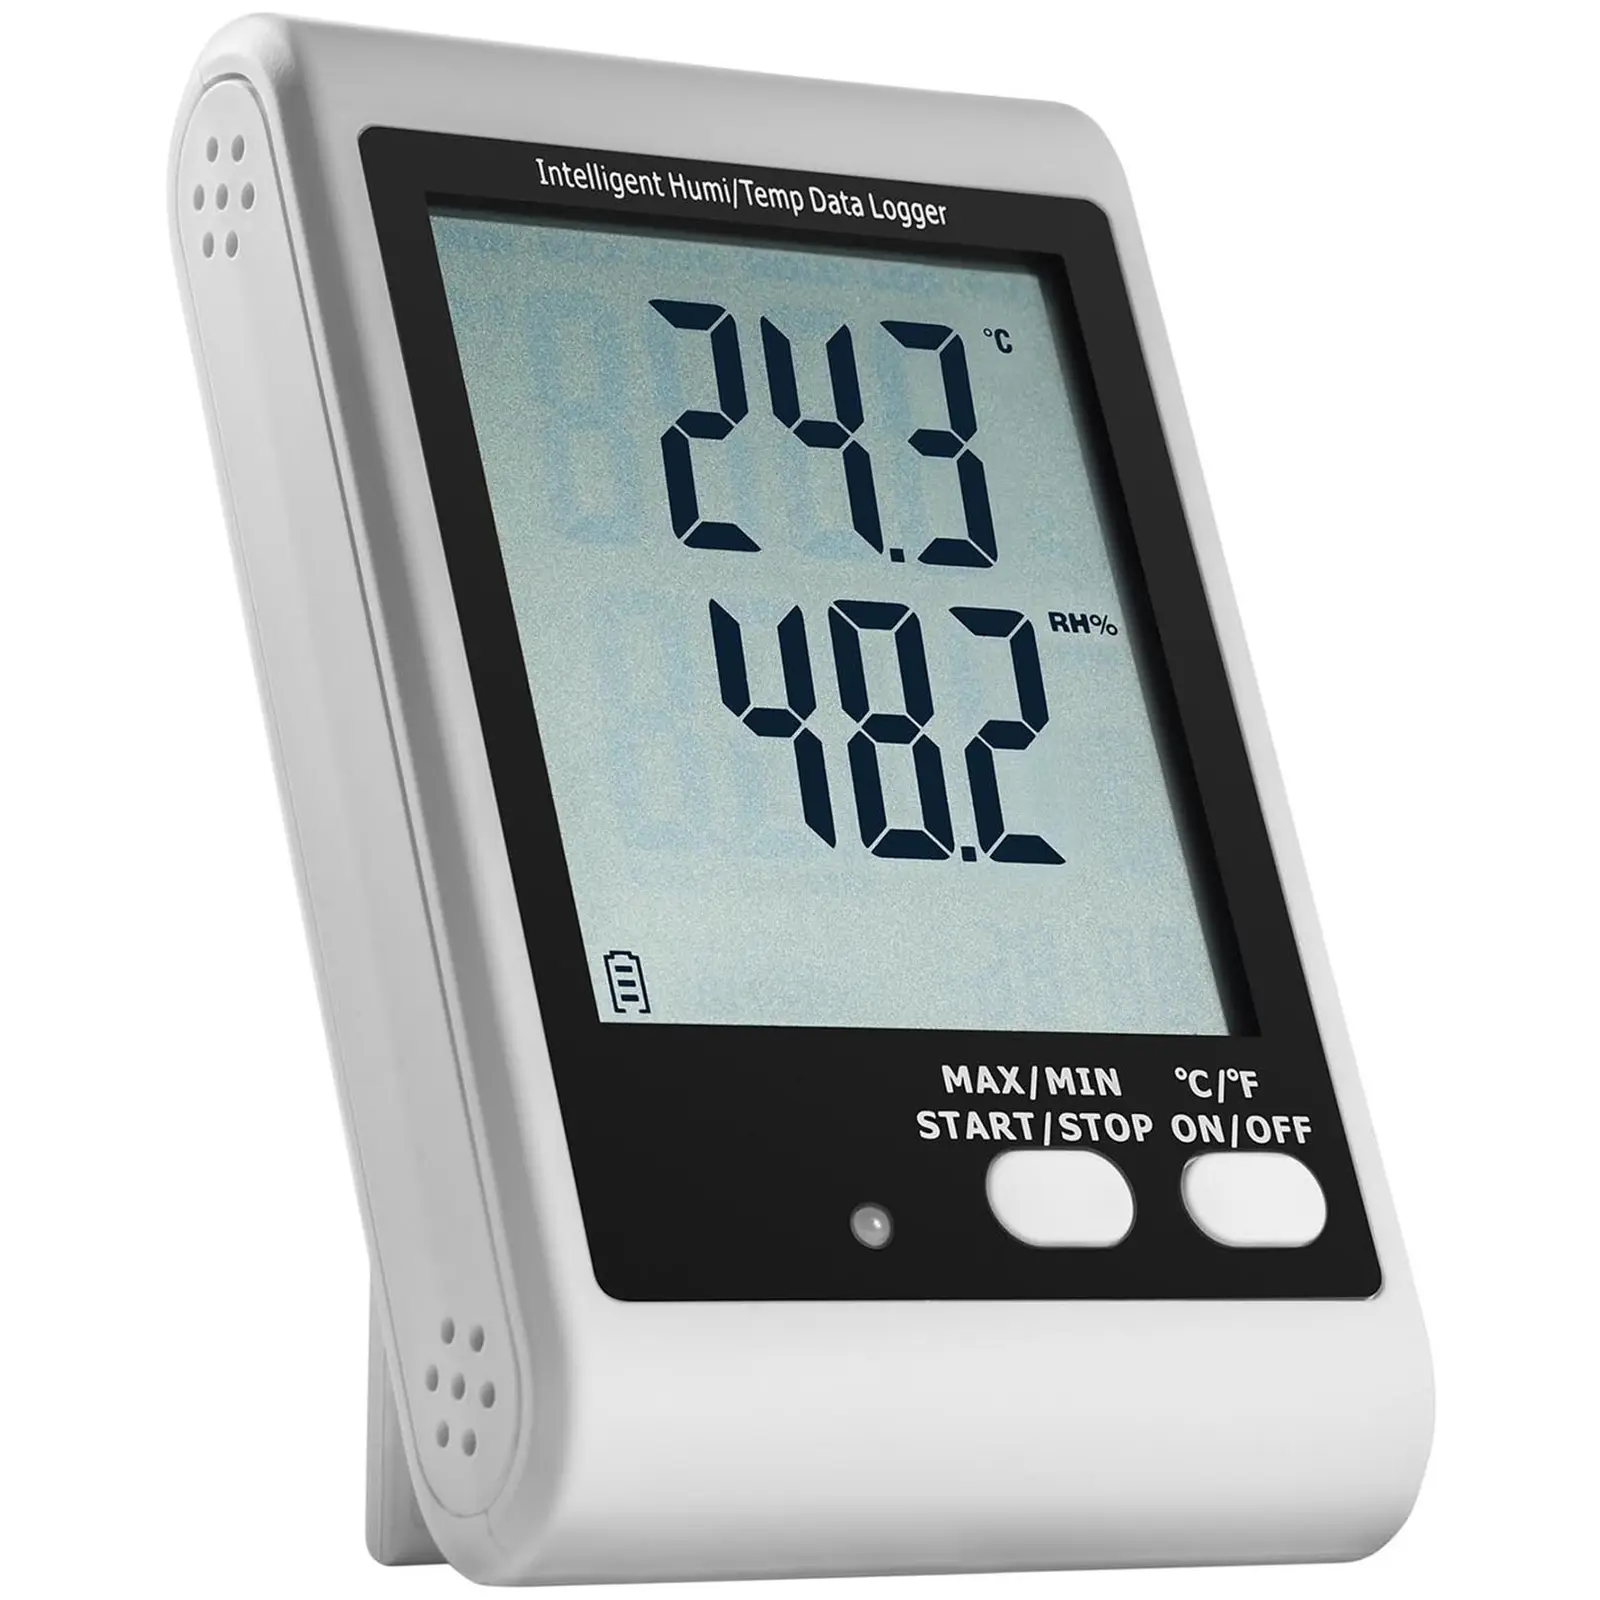 Enregistreur de données - écran LCD - température + humidité de l’air